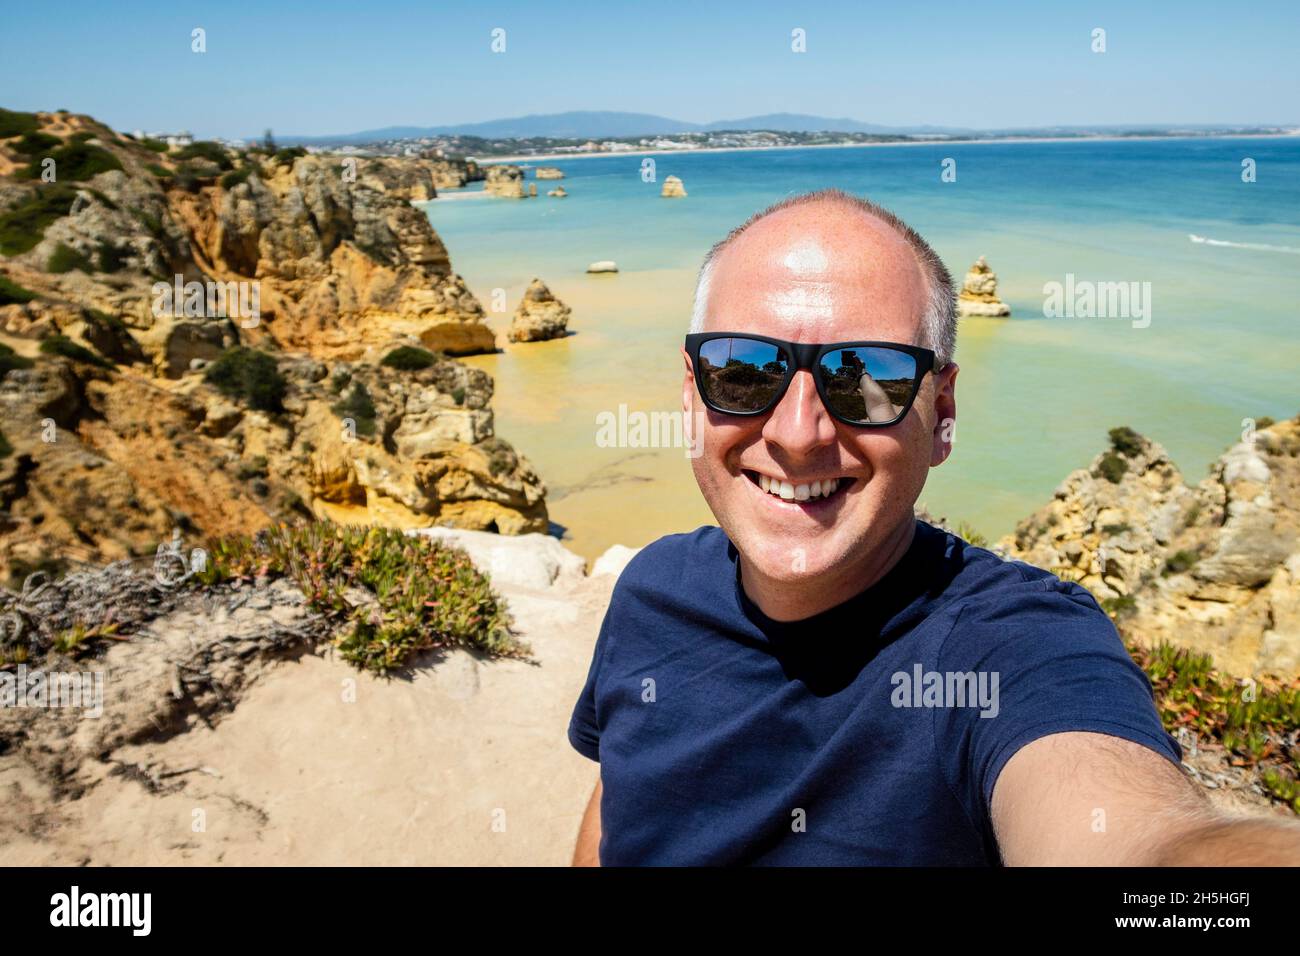 Touriste prenant photo de lui-même à la célèbre Ponta da Piedade, Algarve, Portugal Banque D'Images